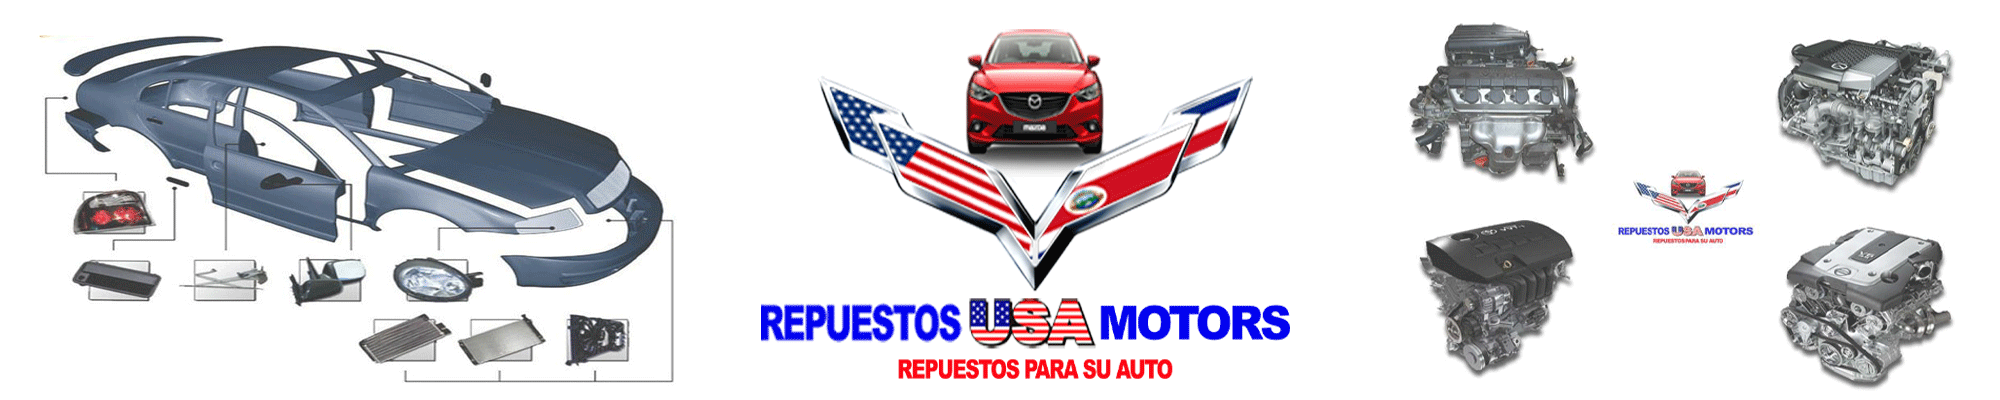 Banner Dinamico Repuestos USA Motors